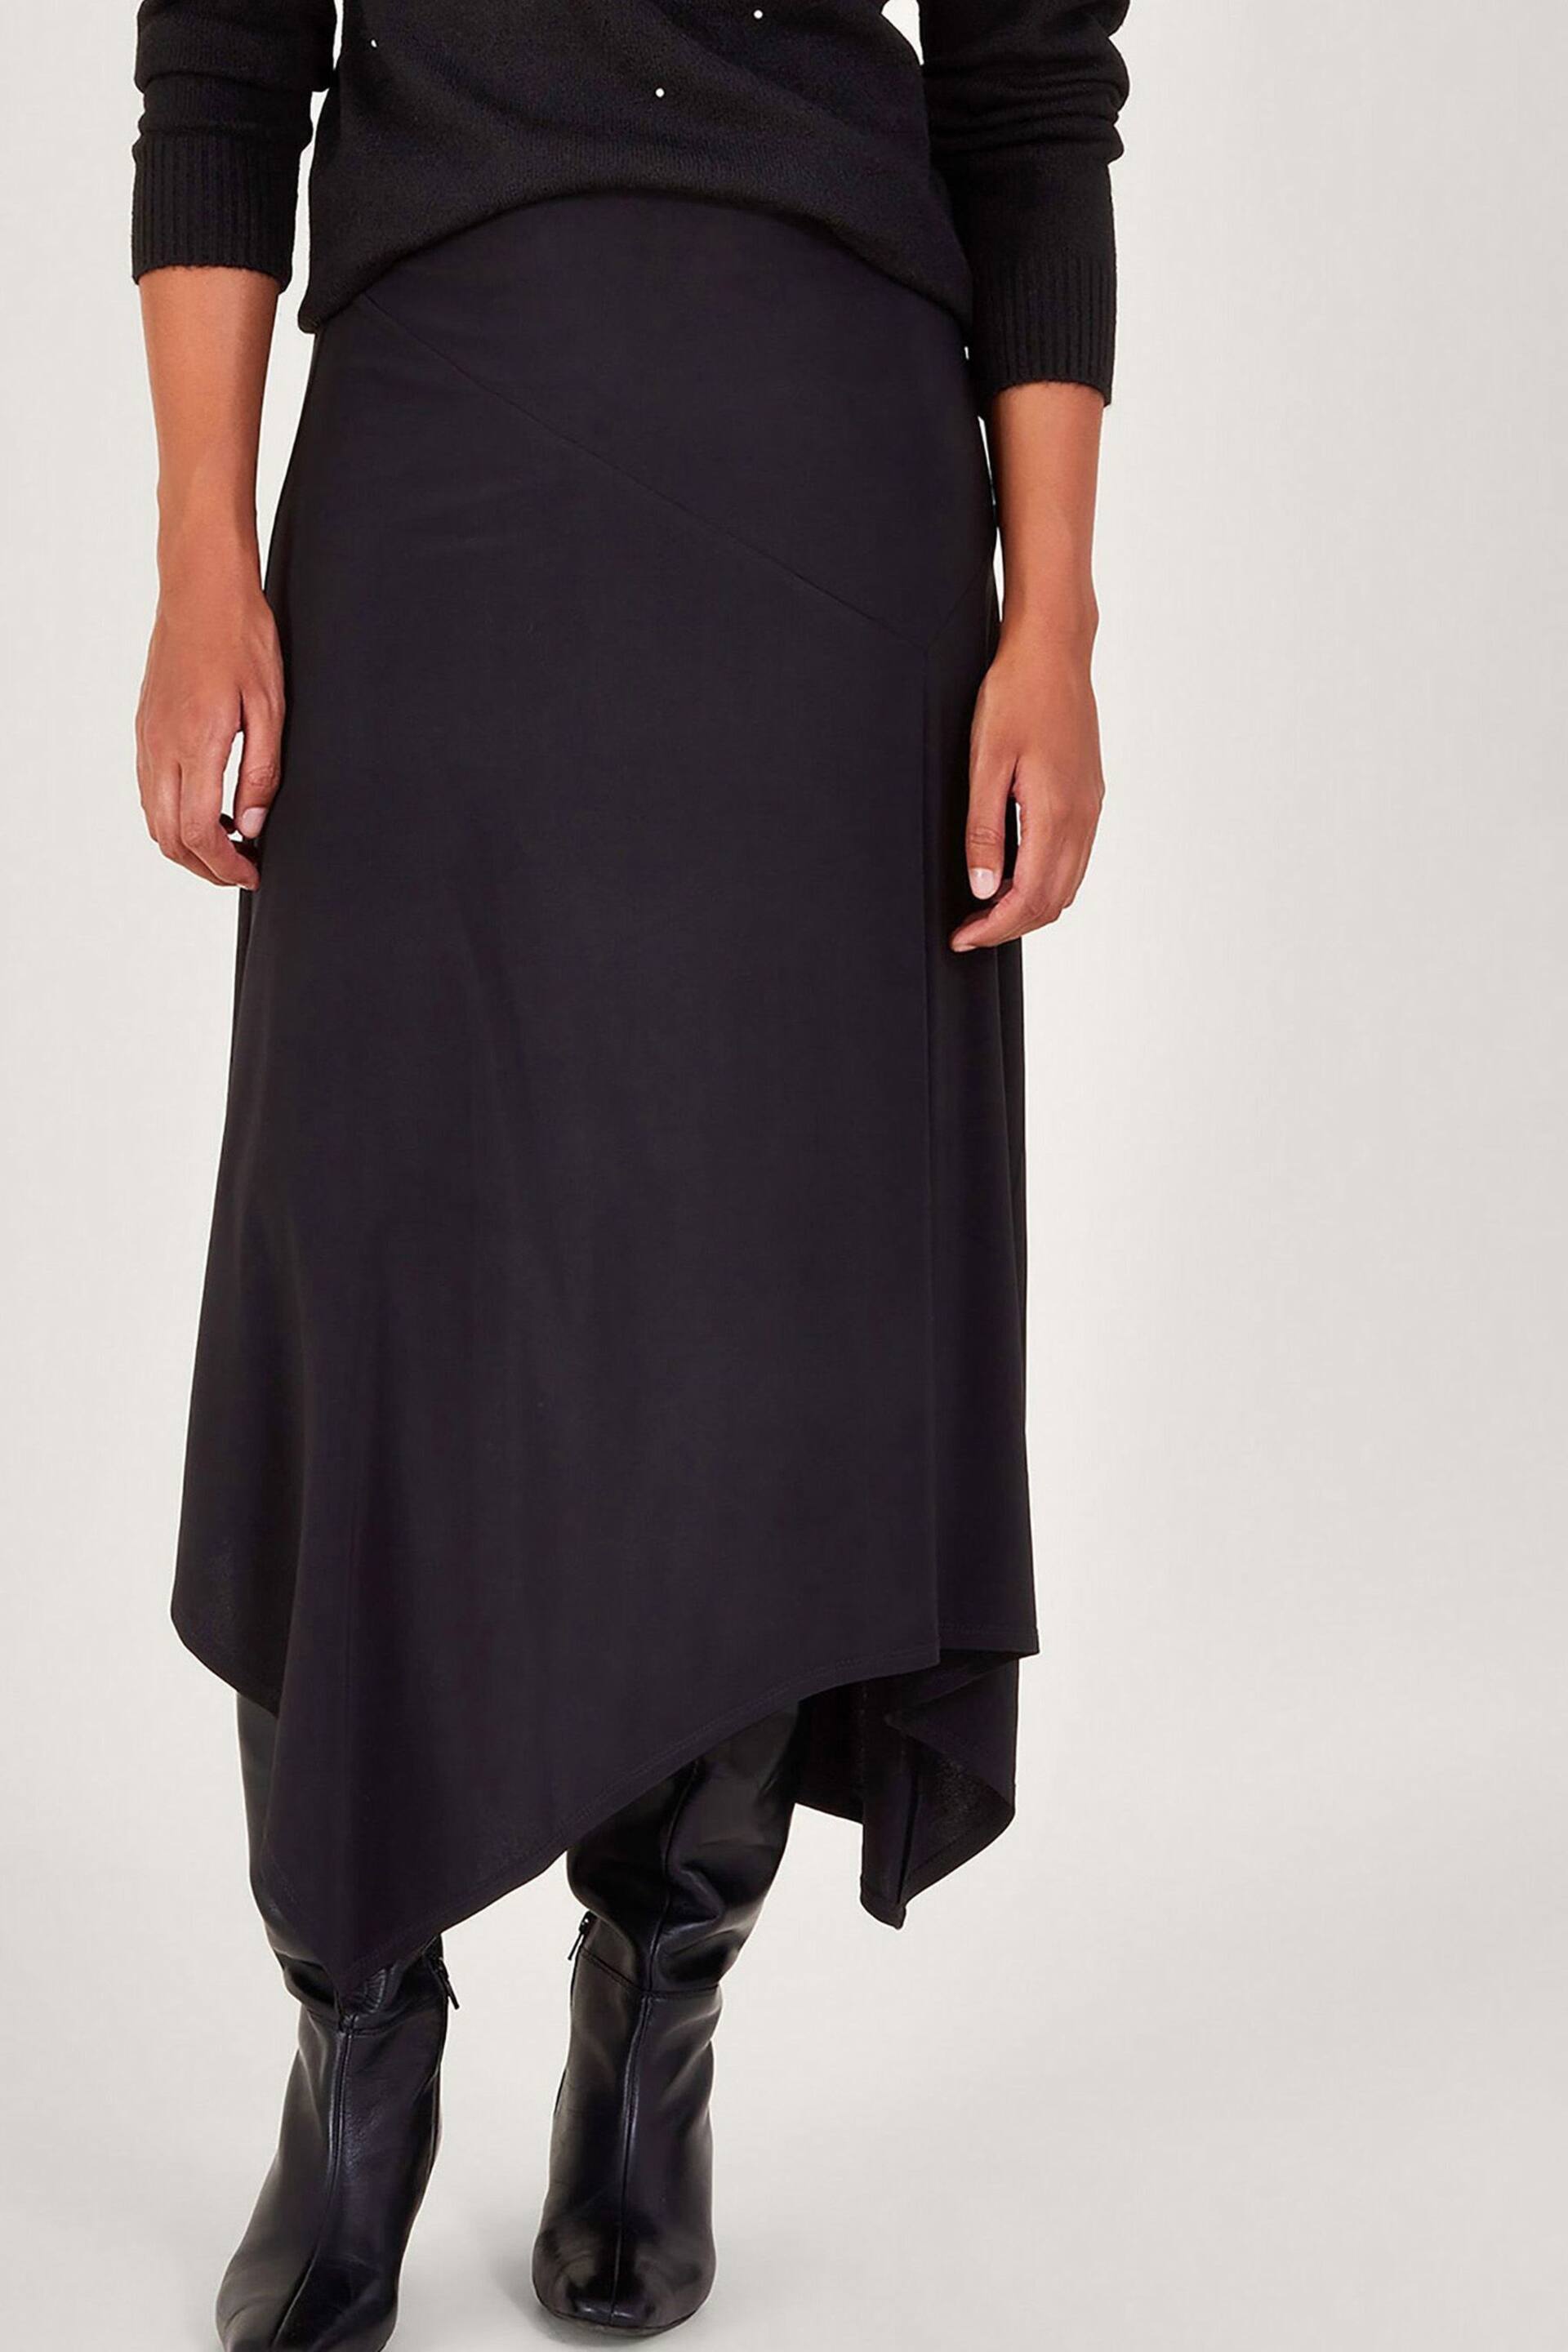 Monsoon Black Fenn Flare Skirt - Image 1 of 5